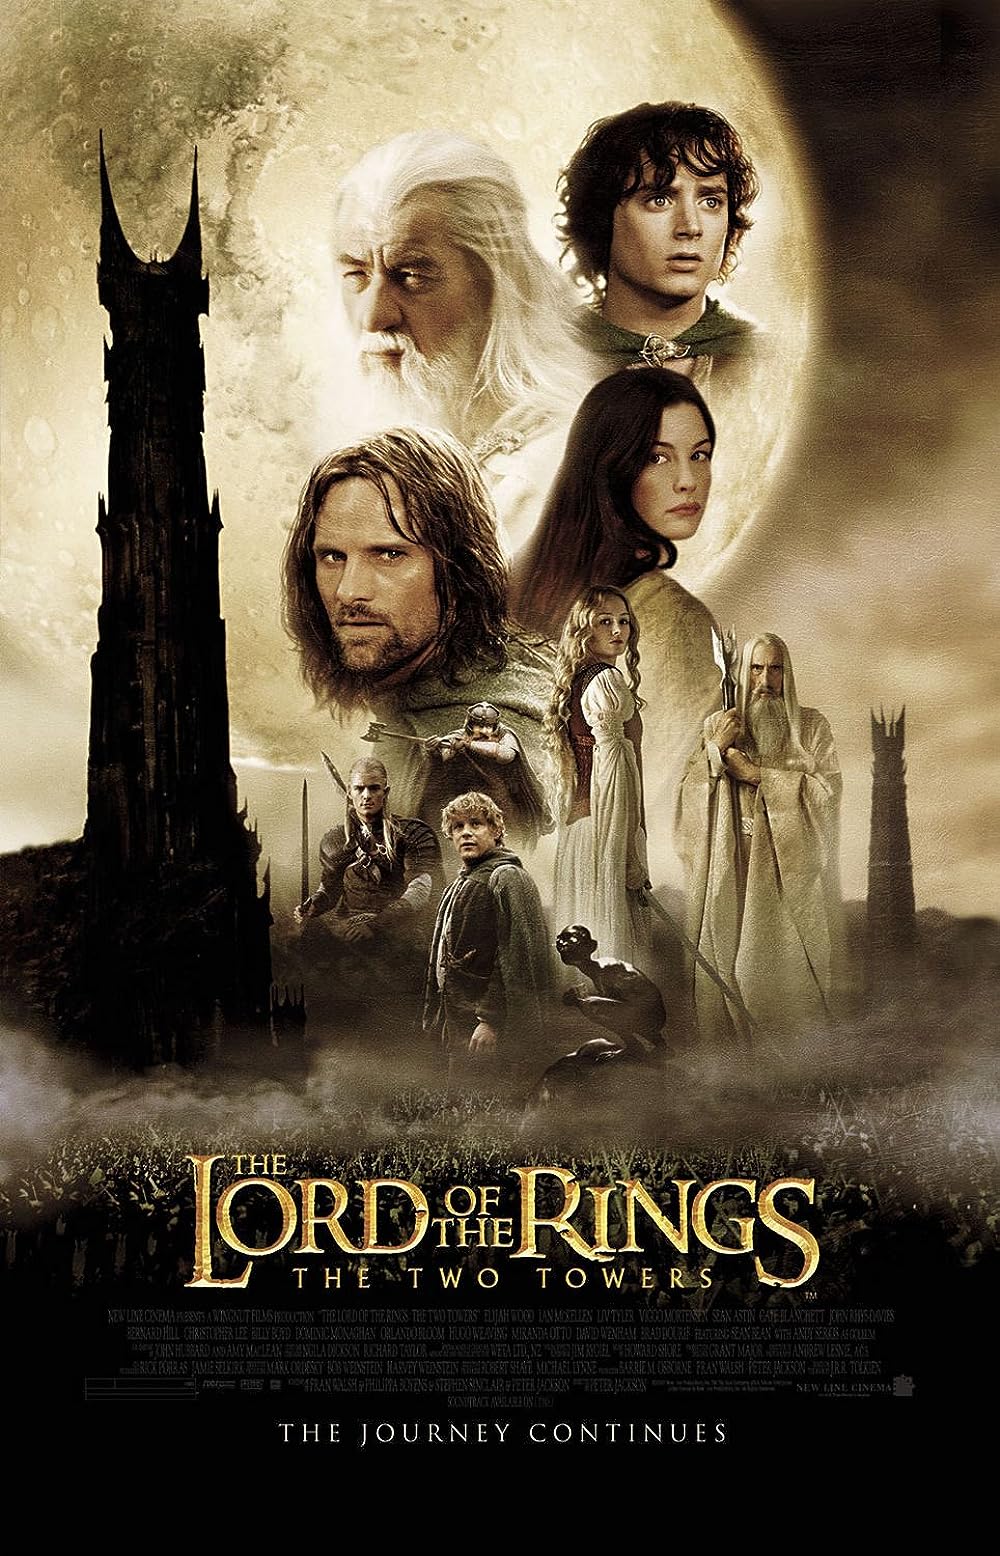 ดูหนังออนไลน์ The Lord of The Rings The Two Towers 2 ศึกหอคอยคู่กู้พิภพ 2002 พากย์ไทย